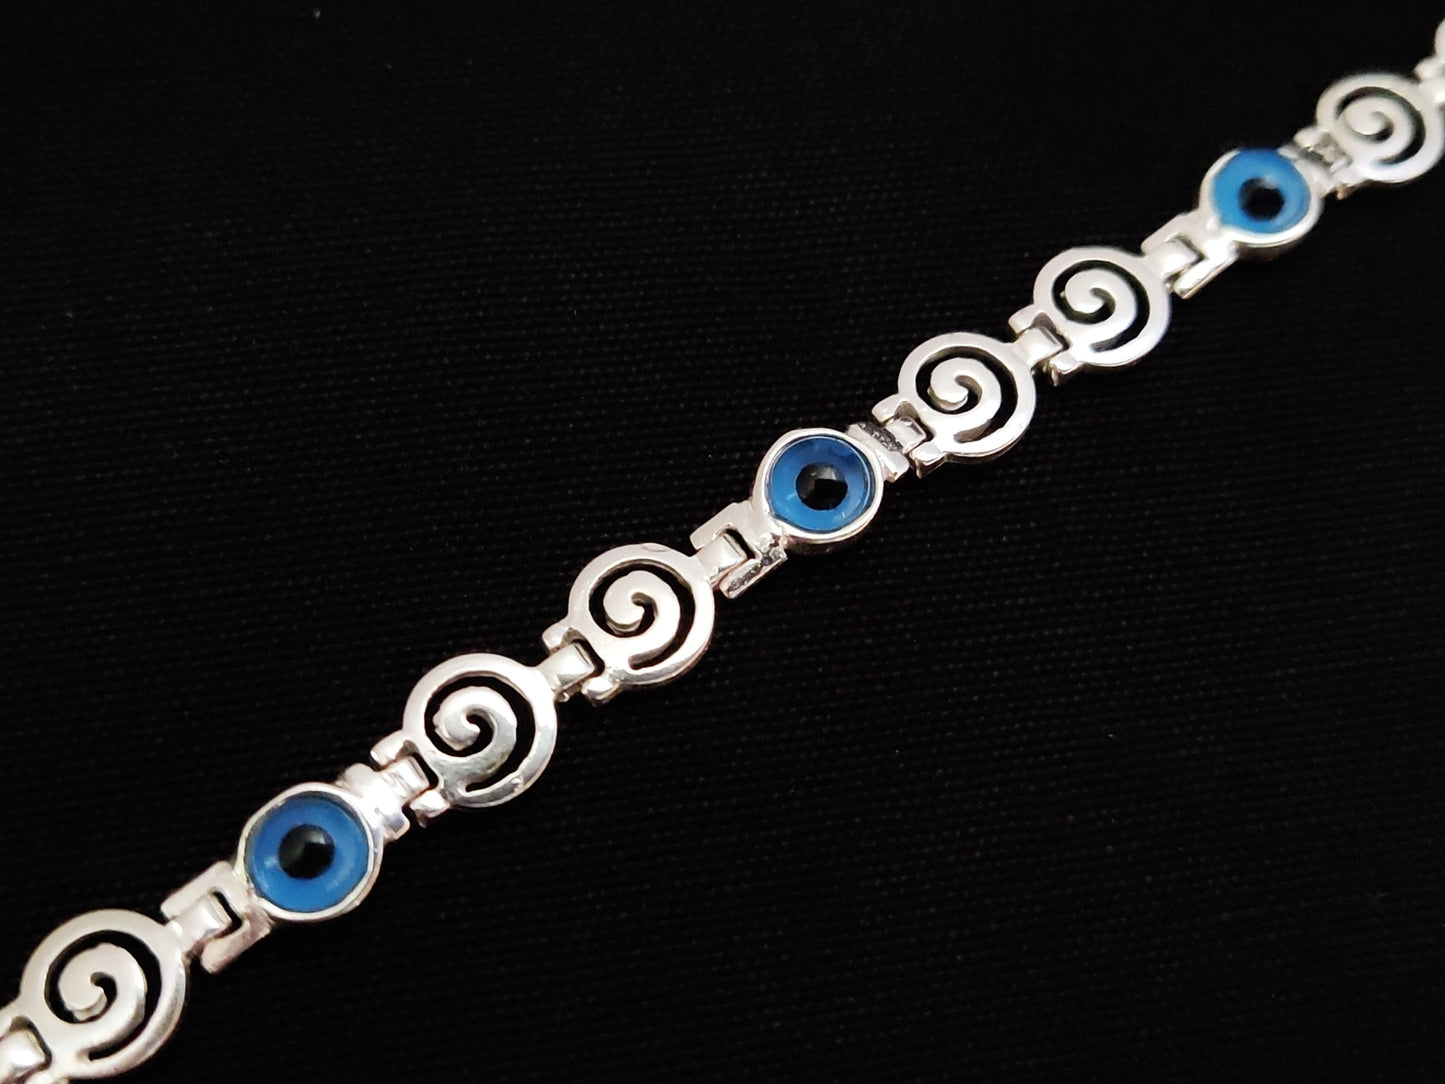 Spiral Greek bracelet with the evil eye design.